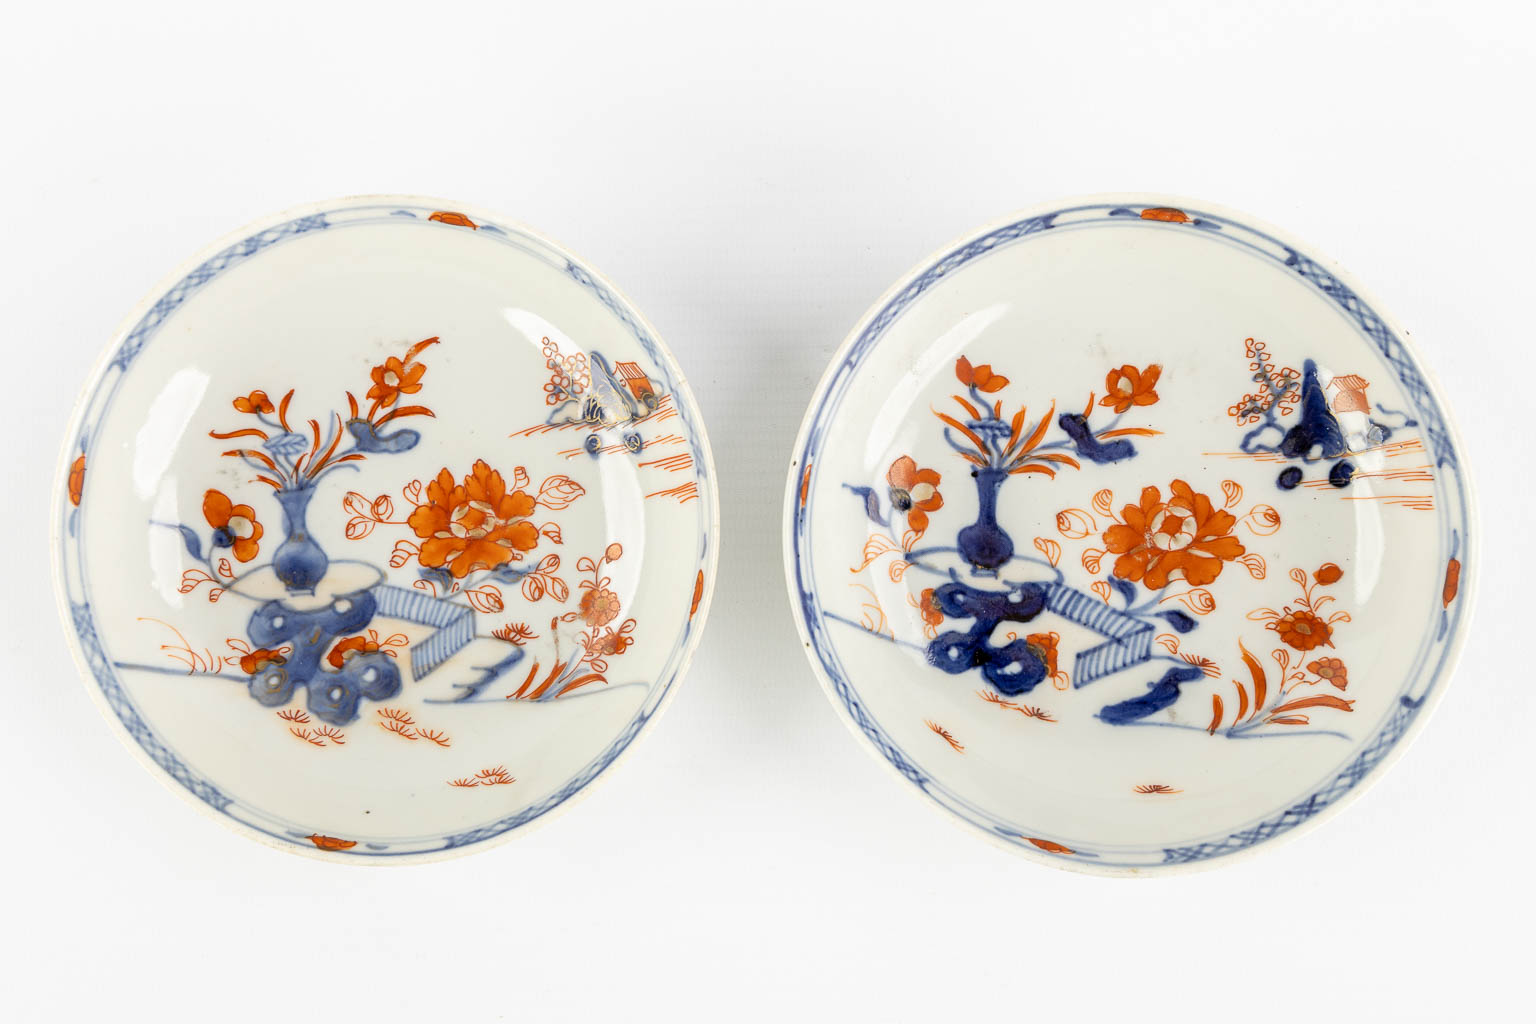 Zes stuks Japans Imari porselein, 19de/20ste eeuw. (D:23 cm)